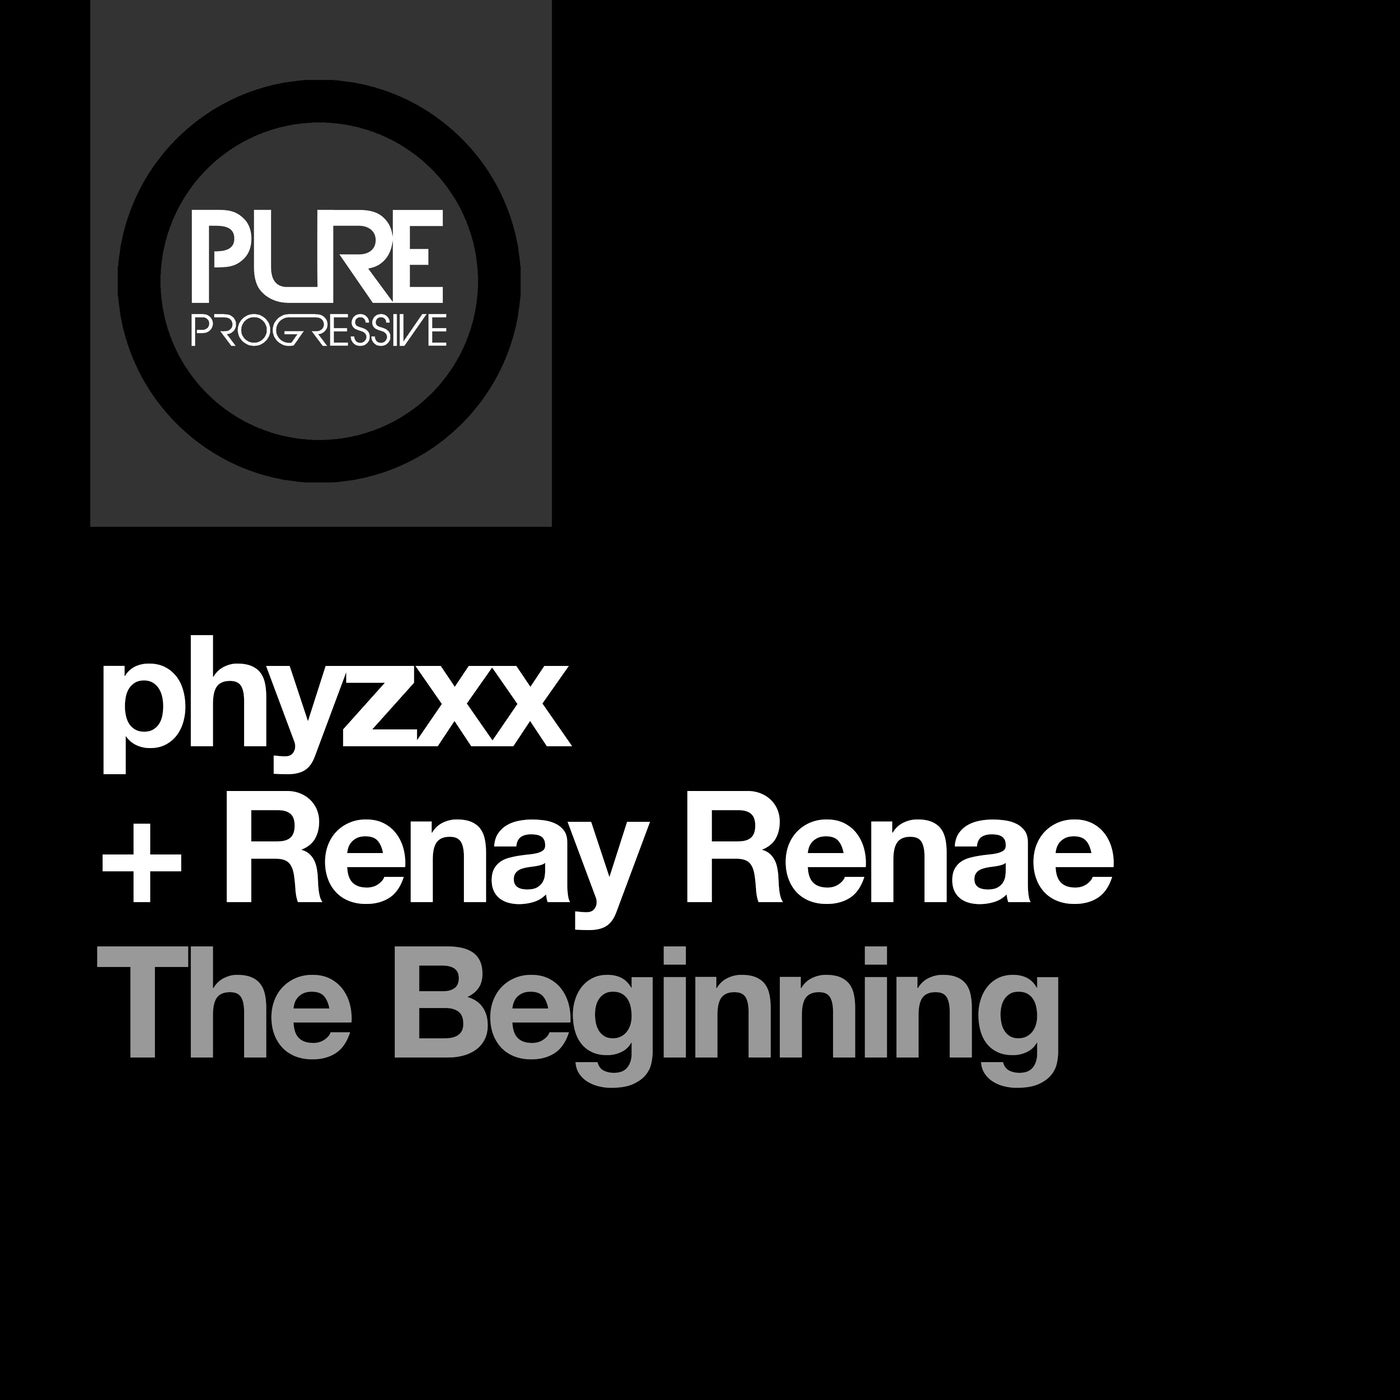 PHYZXX & Renay Renae - The Beginning [Pure Progressive]